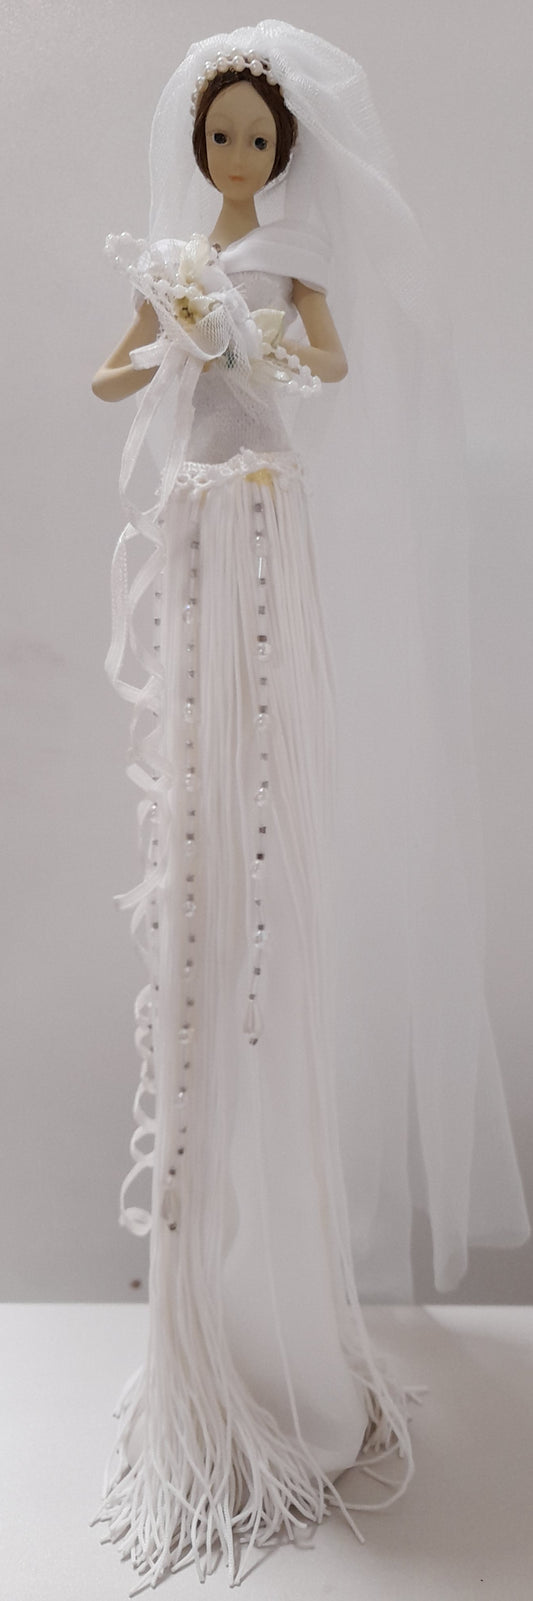 Bride Statue - 37cm tall